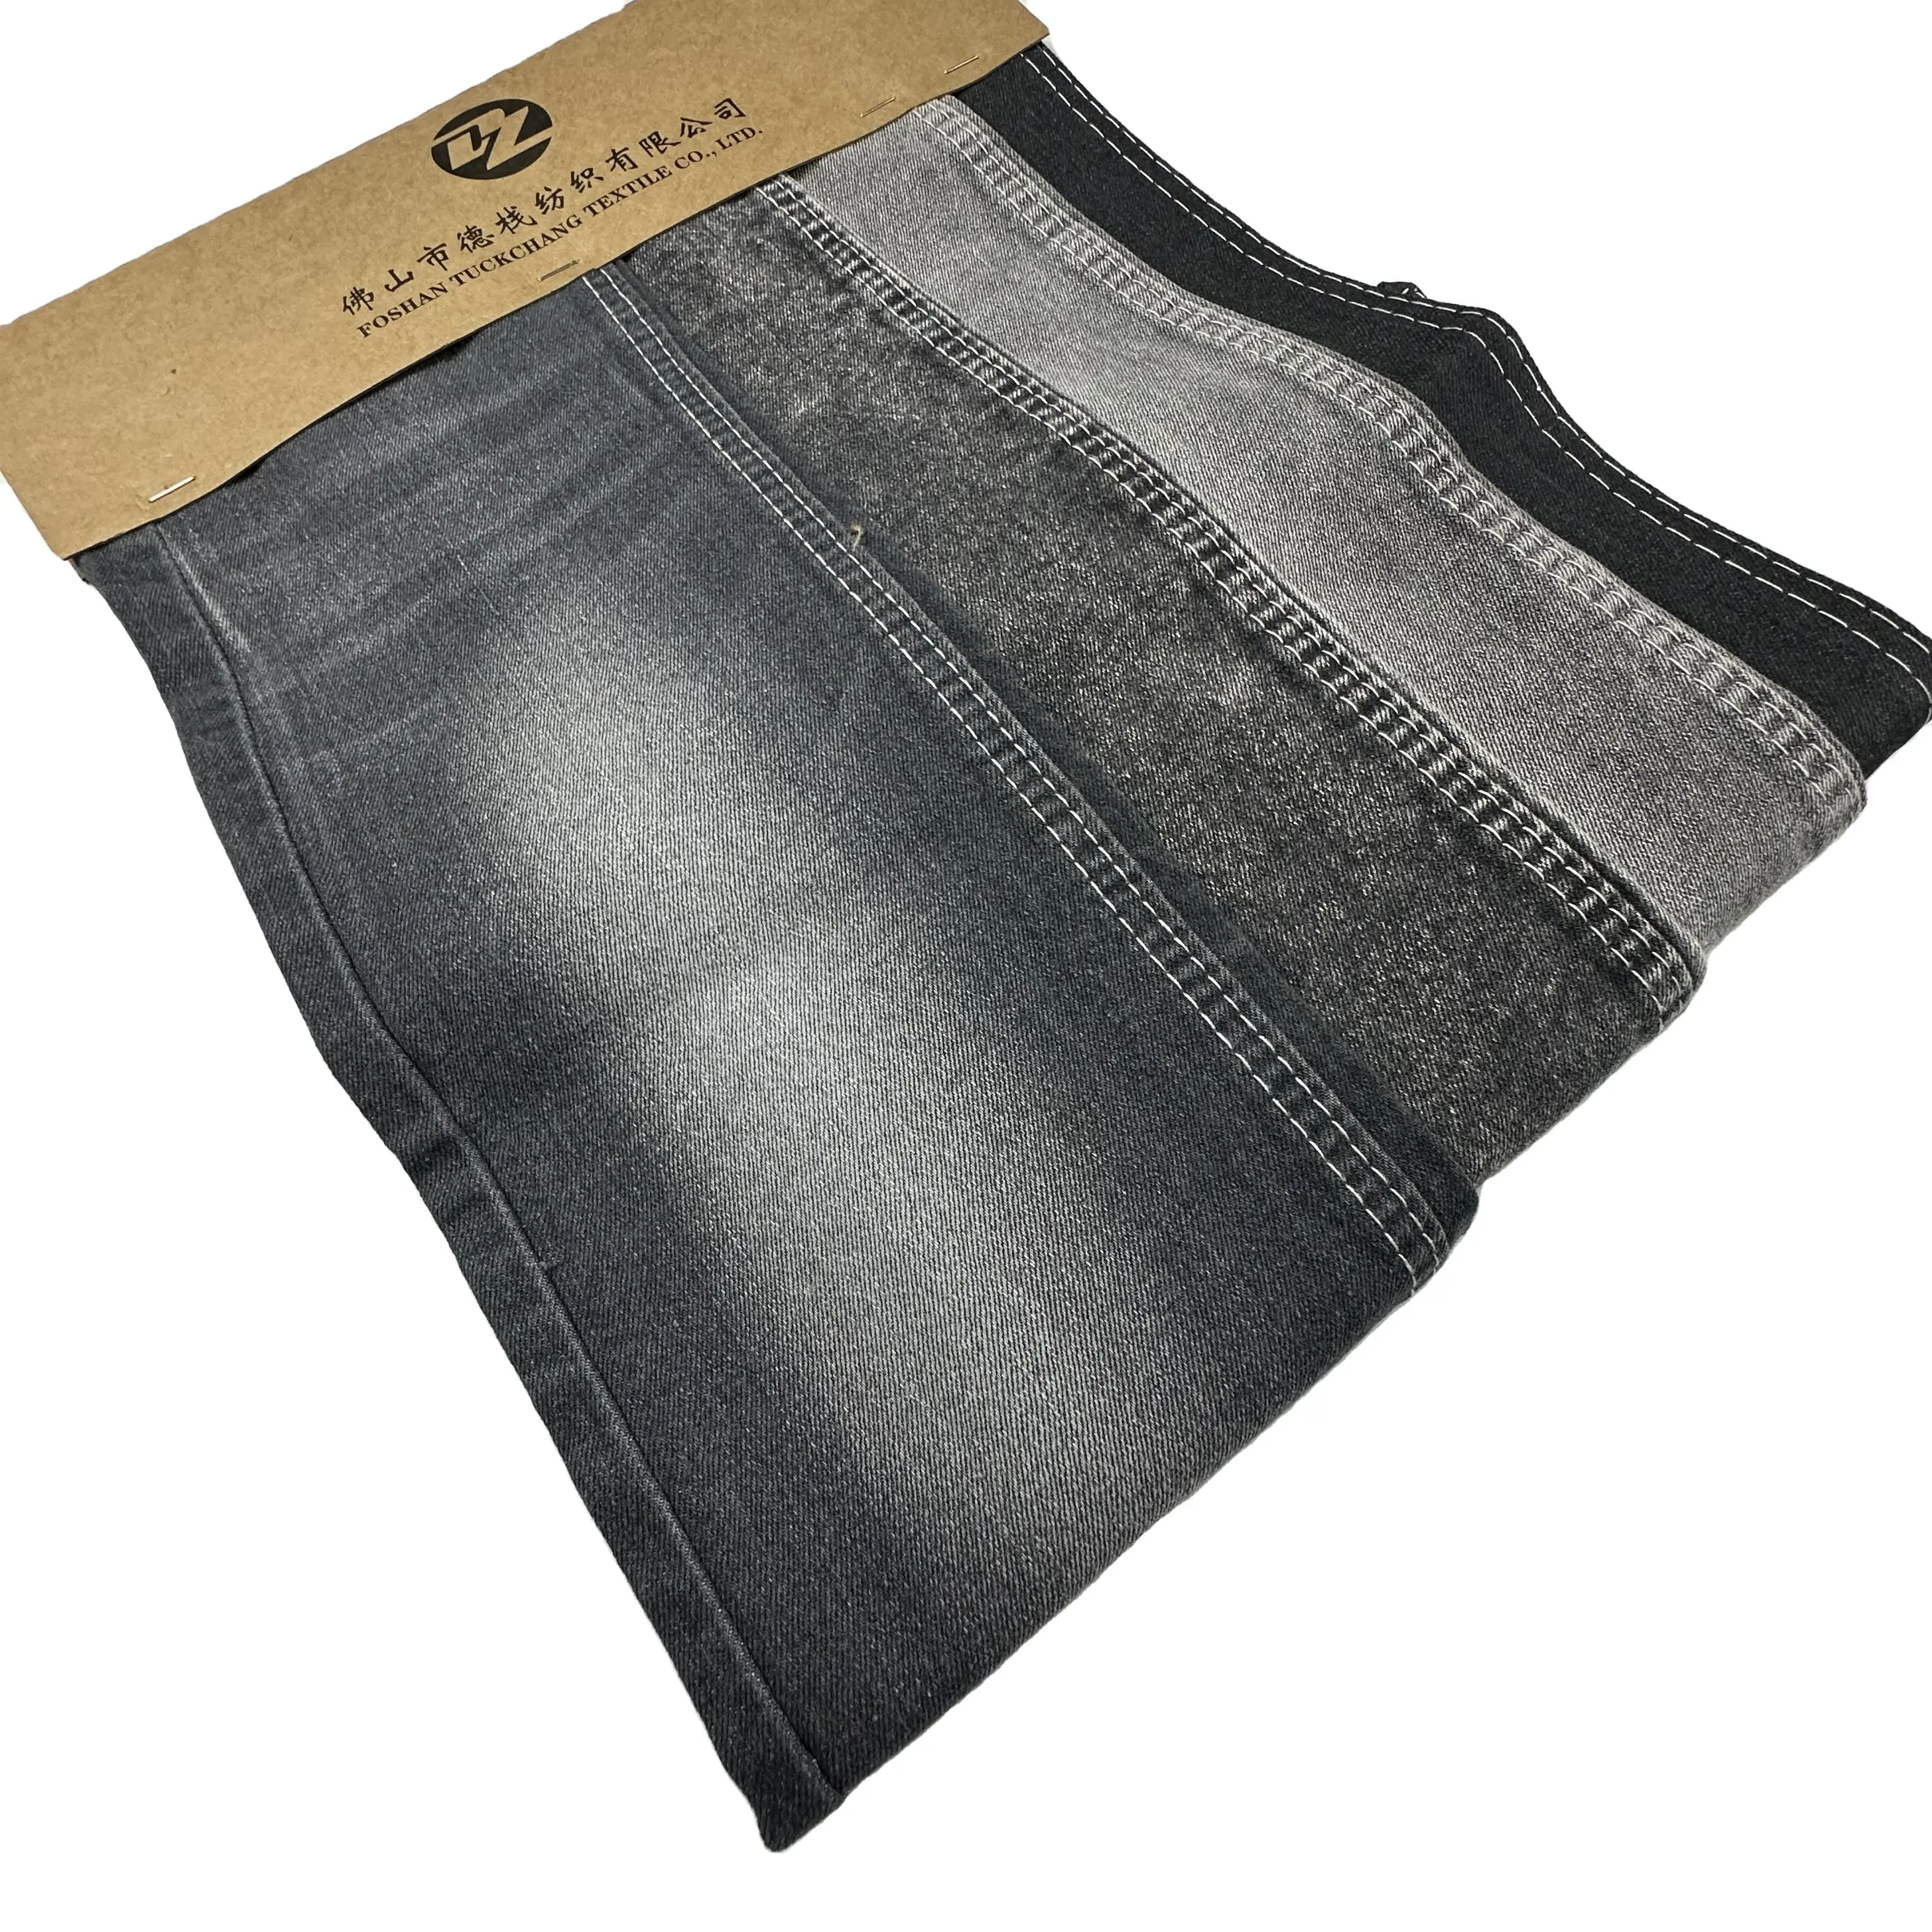 Prix d'usine poids moyen personnalisé denim jeans tissus stock 11.2oz lot noir gris couleur ventes sergé denim tissus pour jeans